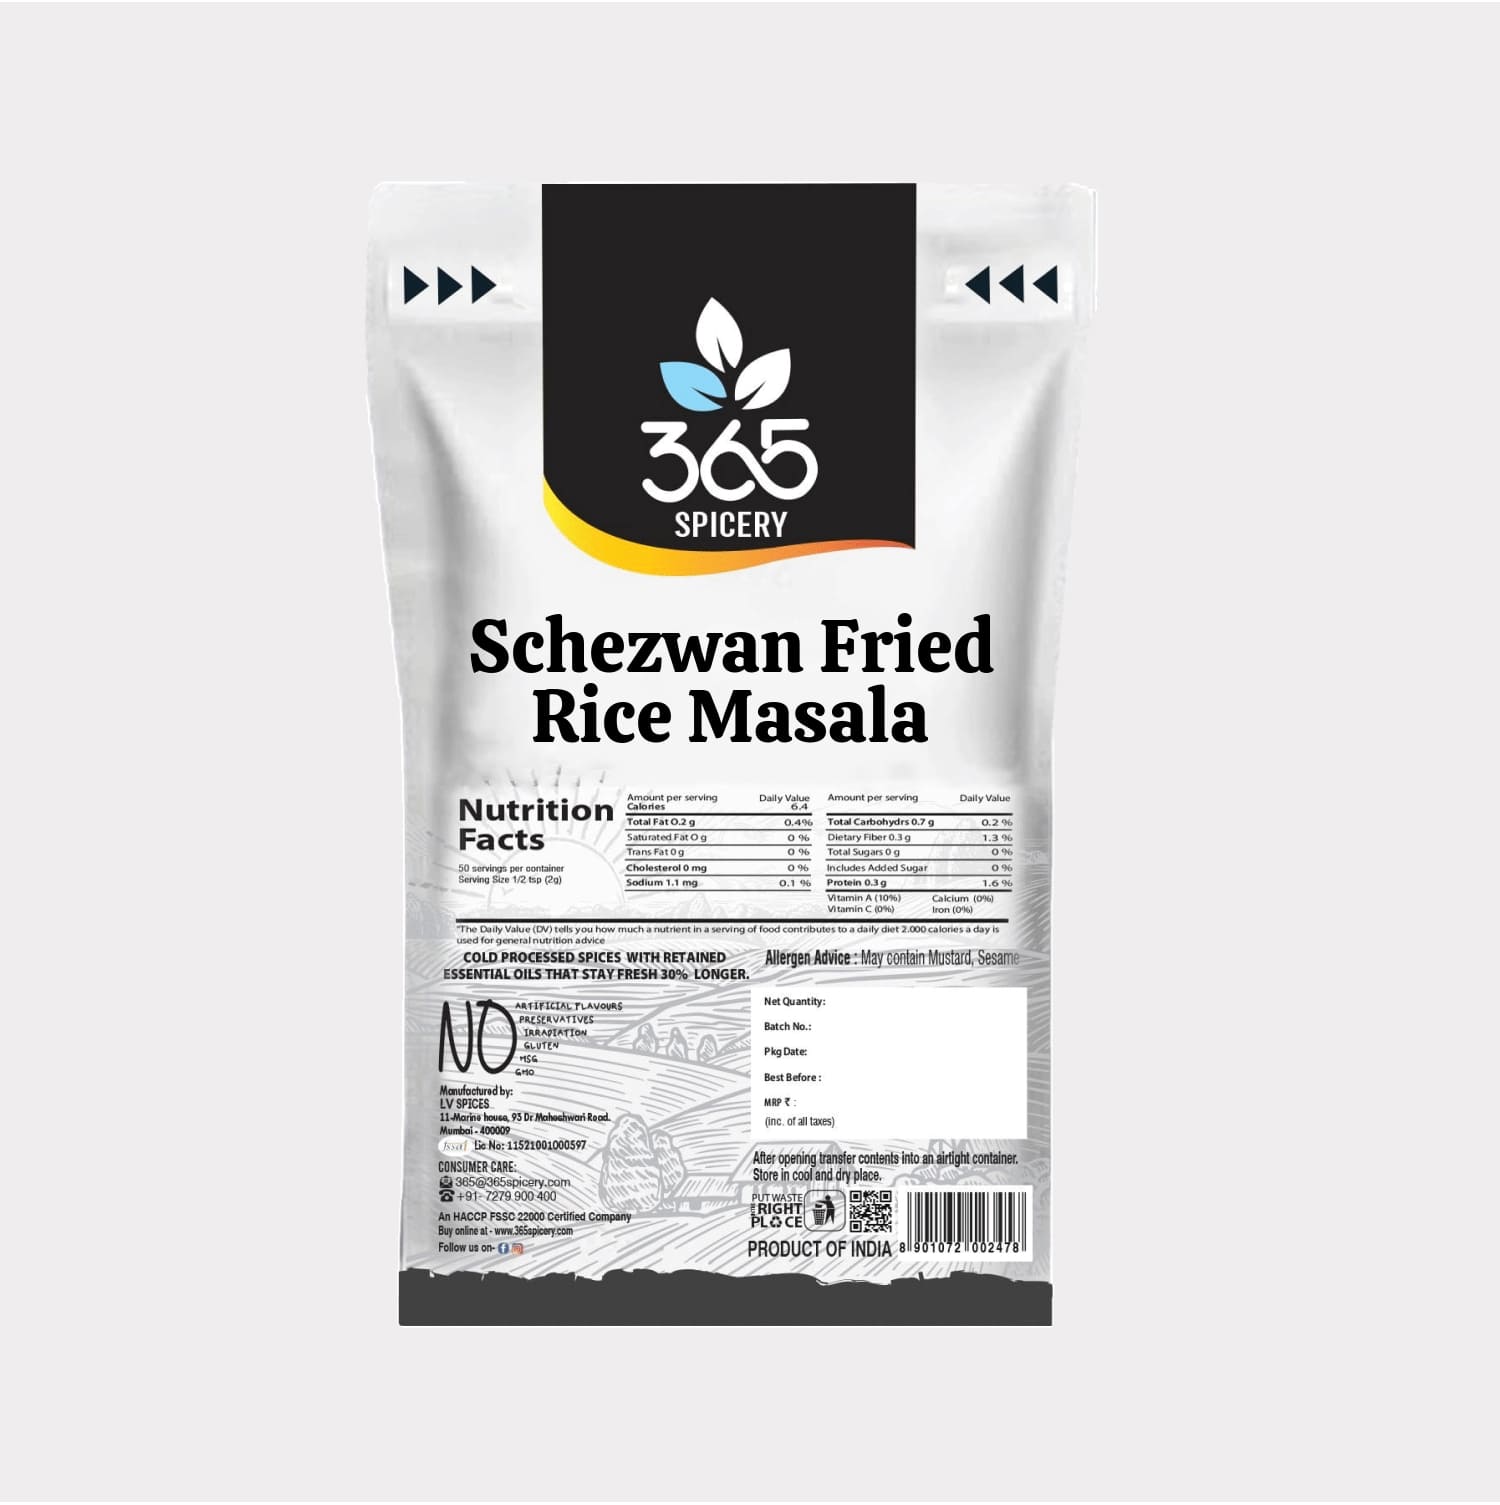 Schezwan Fried Rice Masala